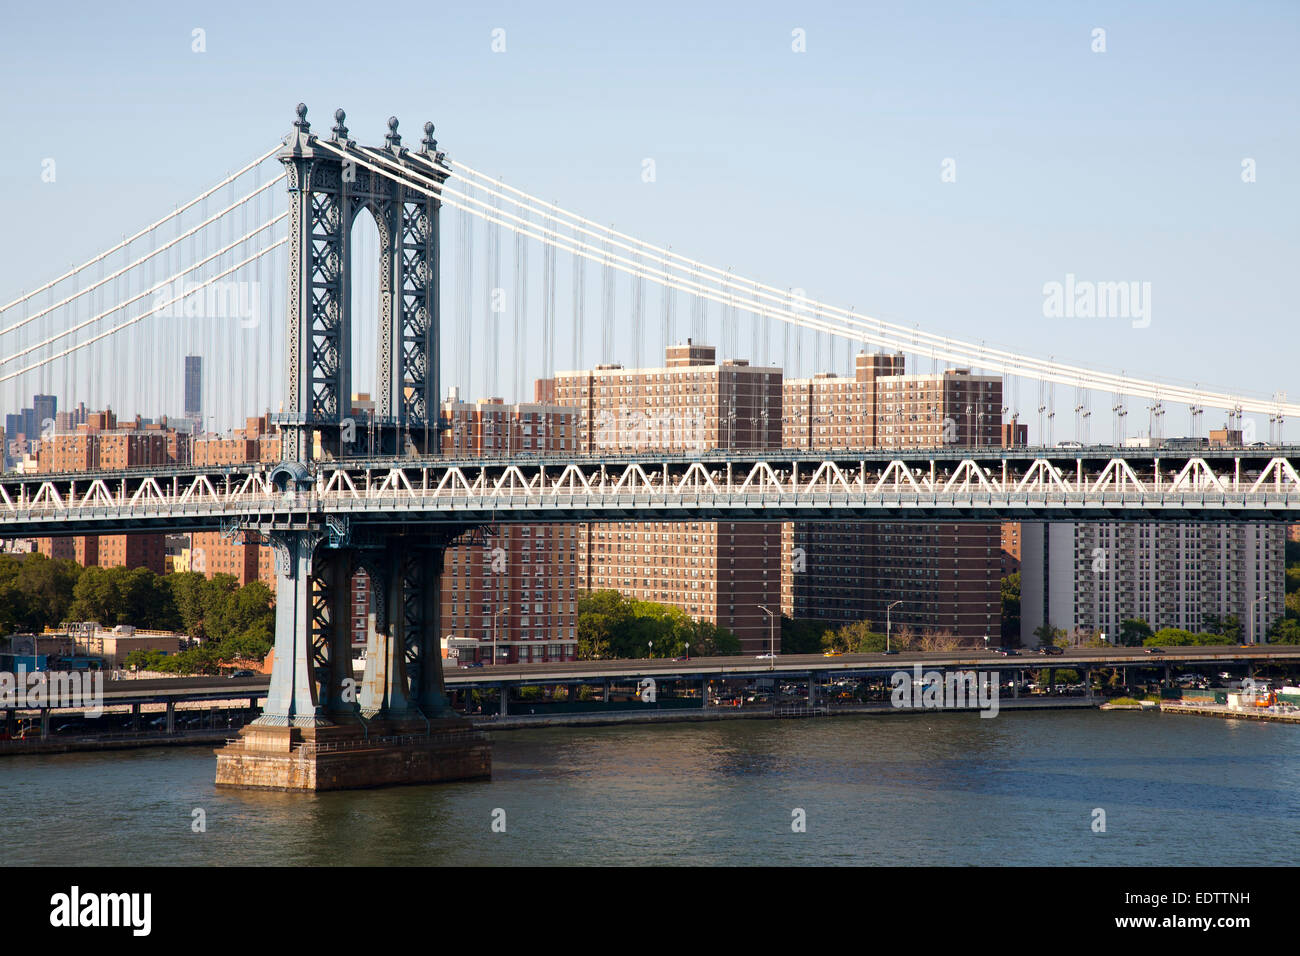 Manhattan Manhattan Bridge et sur l'arrière-plan, l'East River, New York, USA, Amérique Latine Banque D'Images